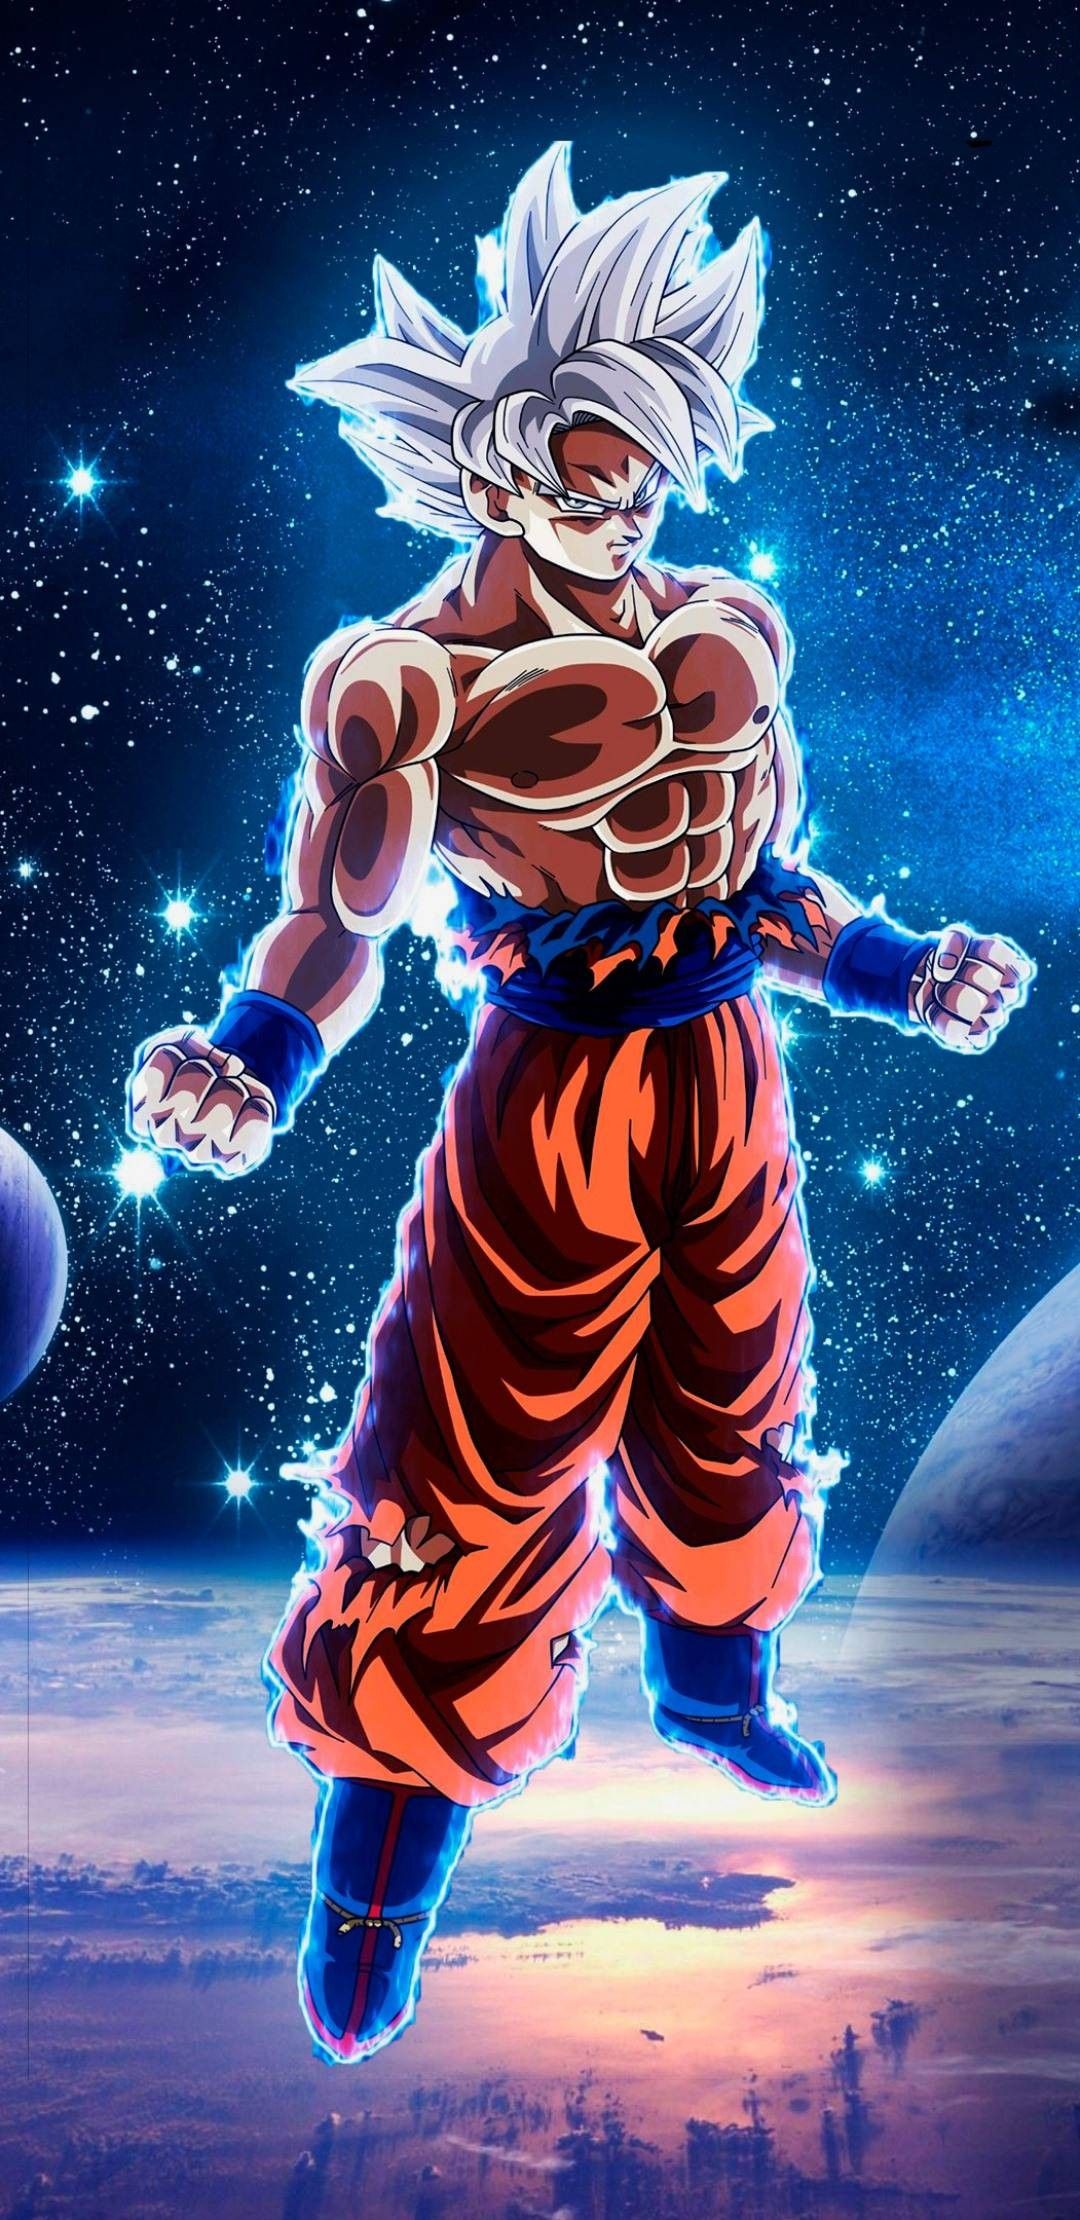 Goku ultra instinct wallpaper